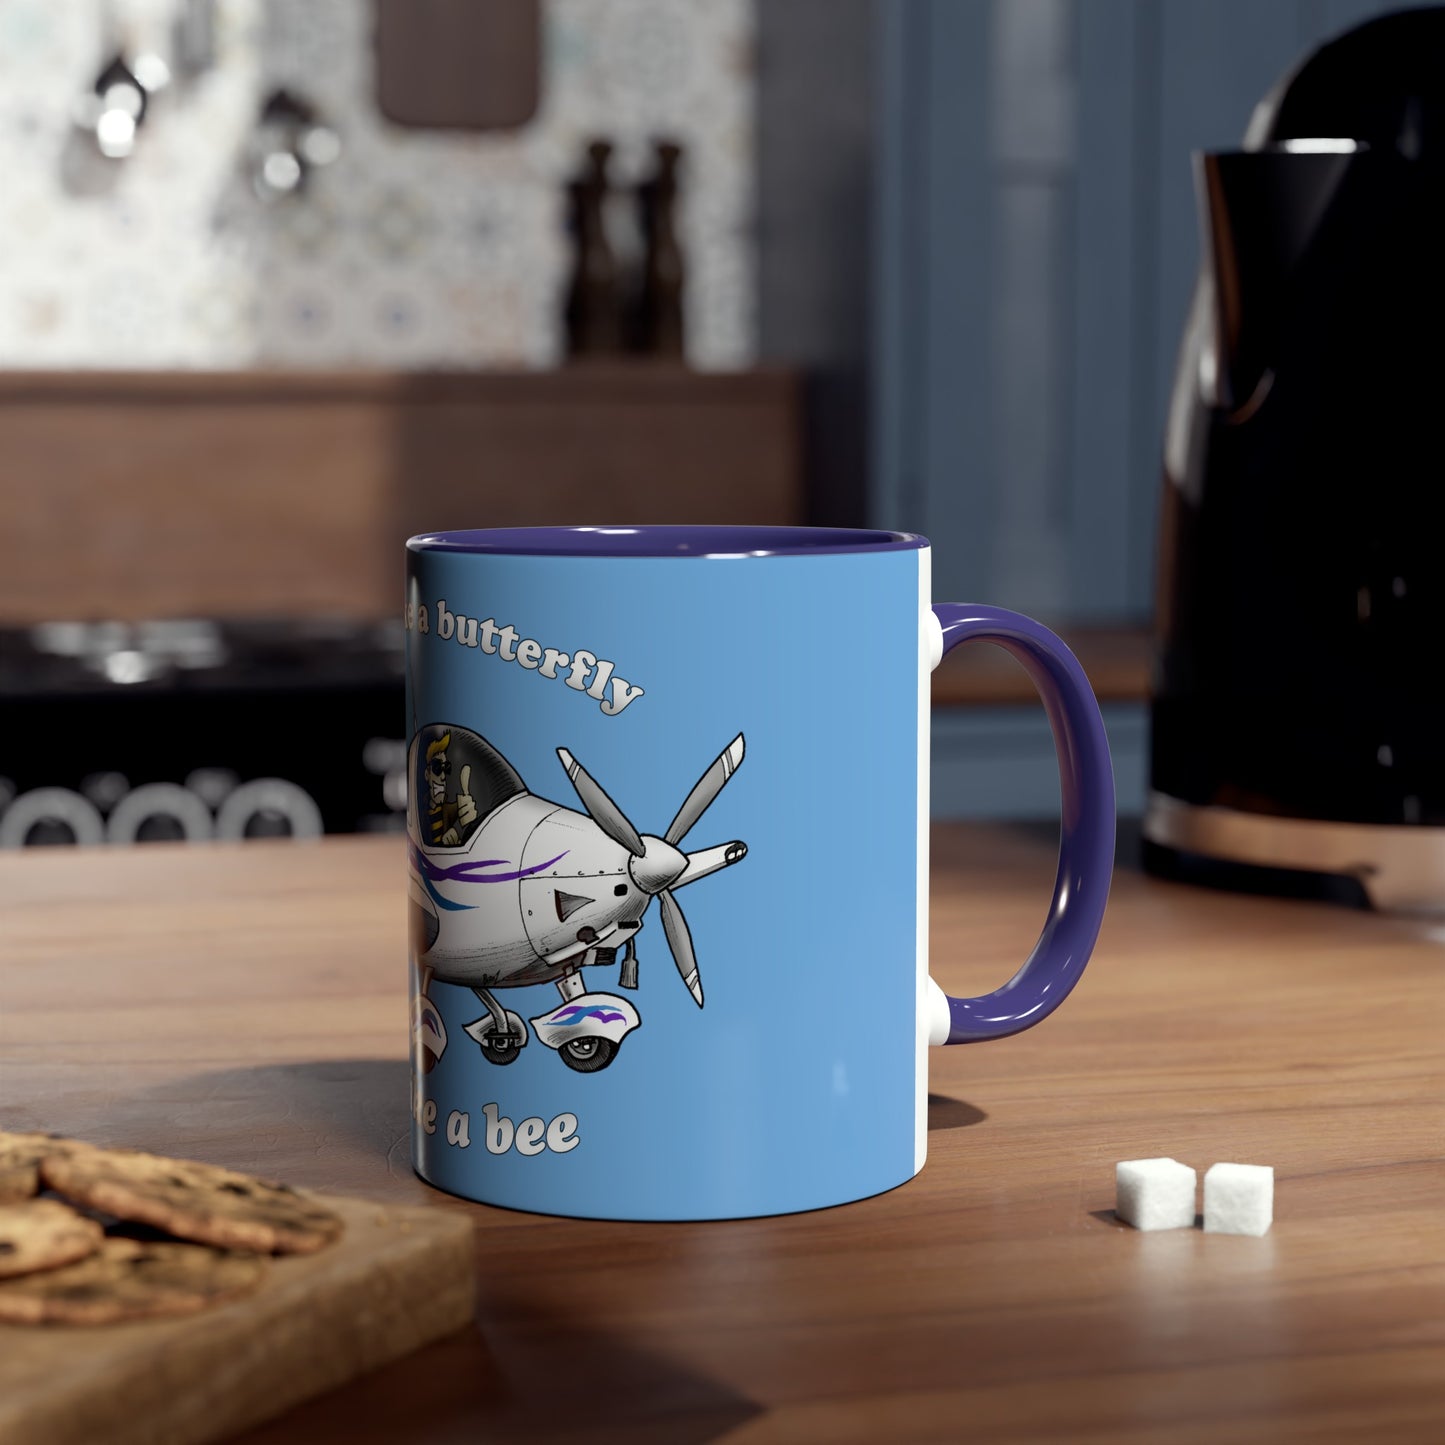 Sting Aircraft Two-Tone Coffee Mugs, 11oz